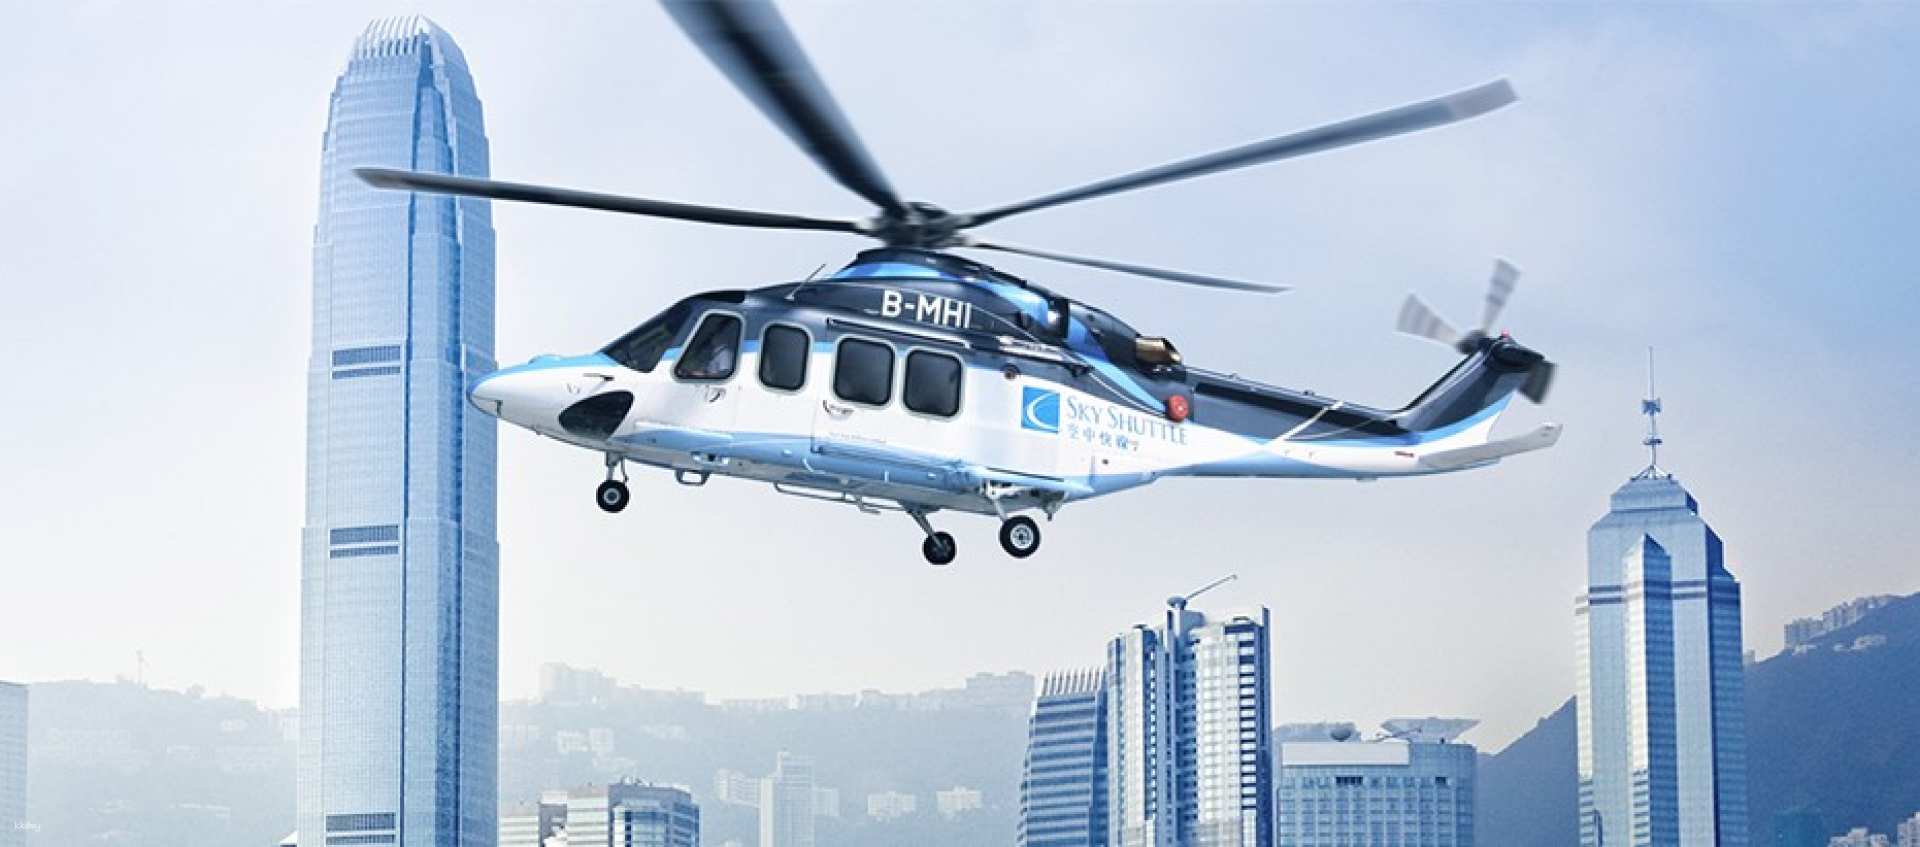 香港,澳門-香港上環港澳碼頭 - 澳門外港| 噴射飛航單程直升機票